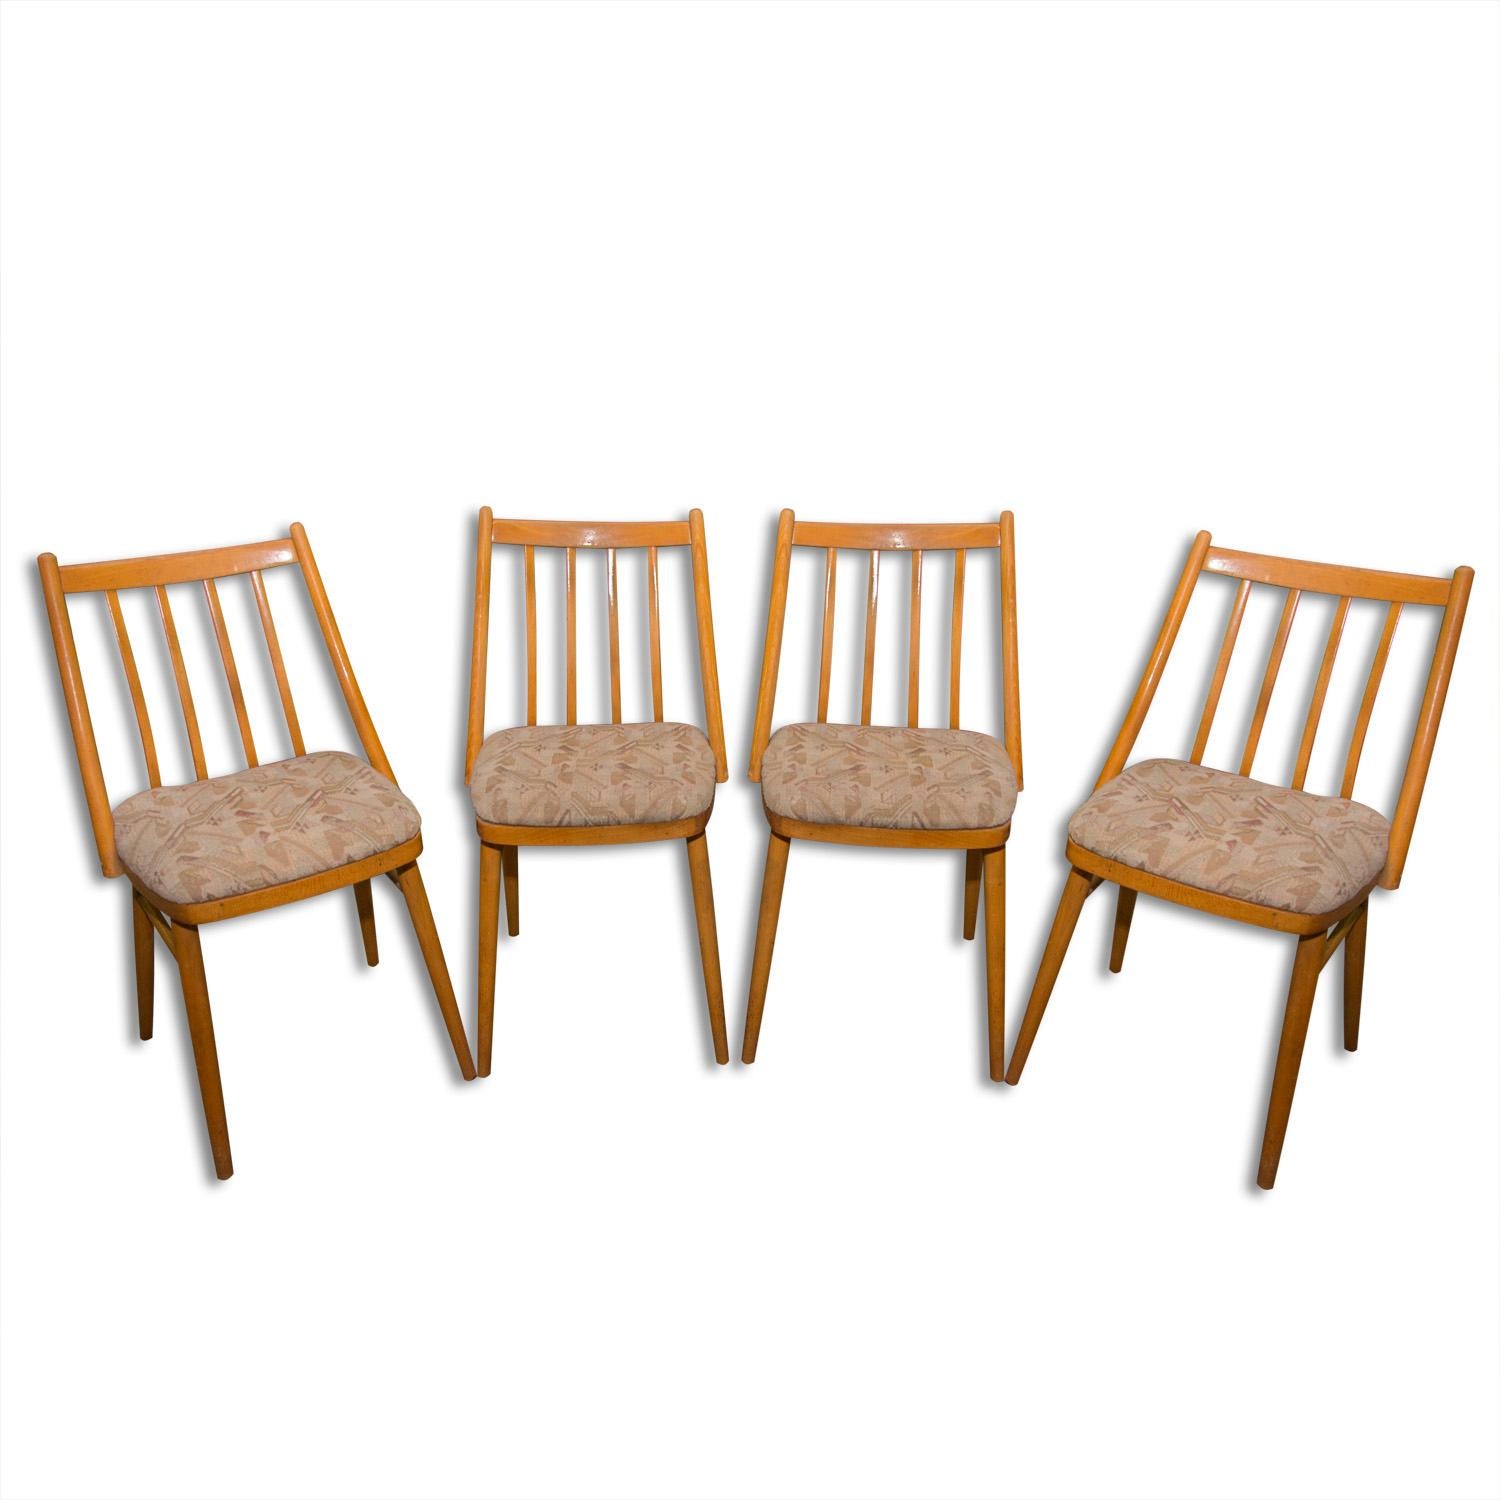 Ces chaises de salle à manger en bois courbé ont été fabriquées dans l'ancienne Tchécoslovaquie par Mier Topolcany dans les années 1960. Il a été conçu par l'architecte tchécoslovaque Antonín Šuman.
Ils sont en bon état vintage, montrent des signes